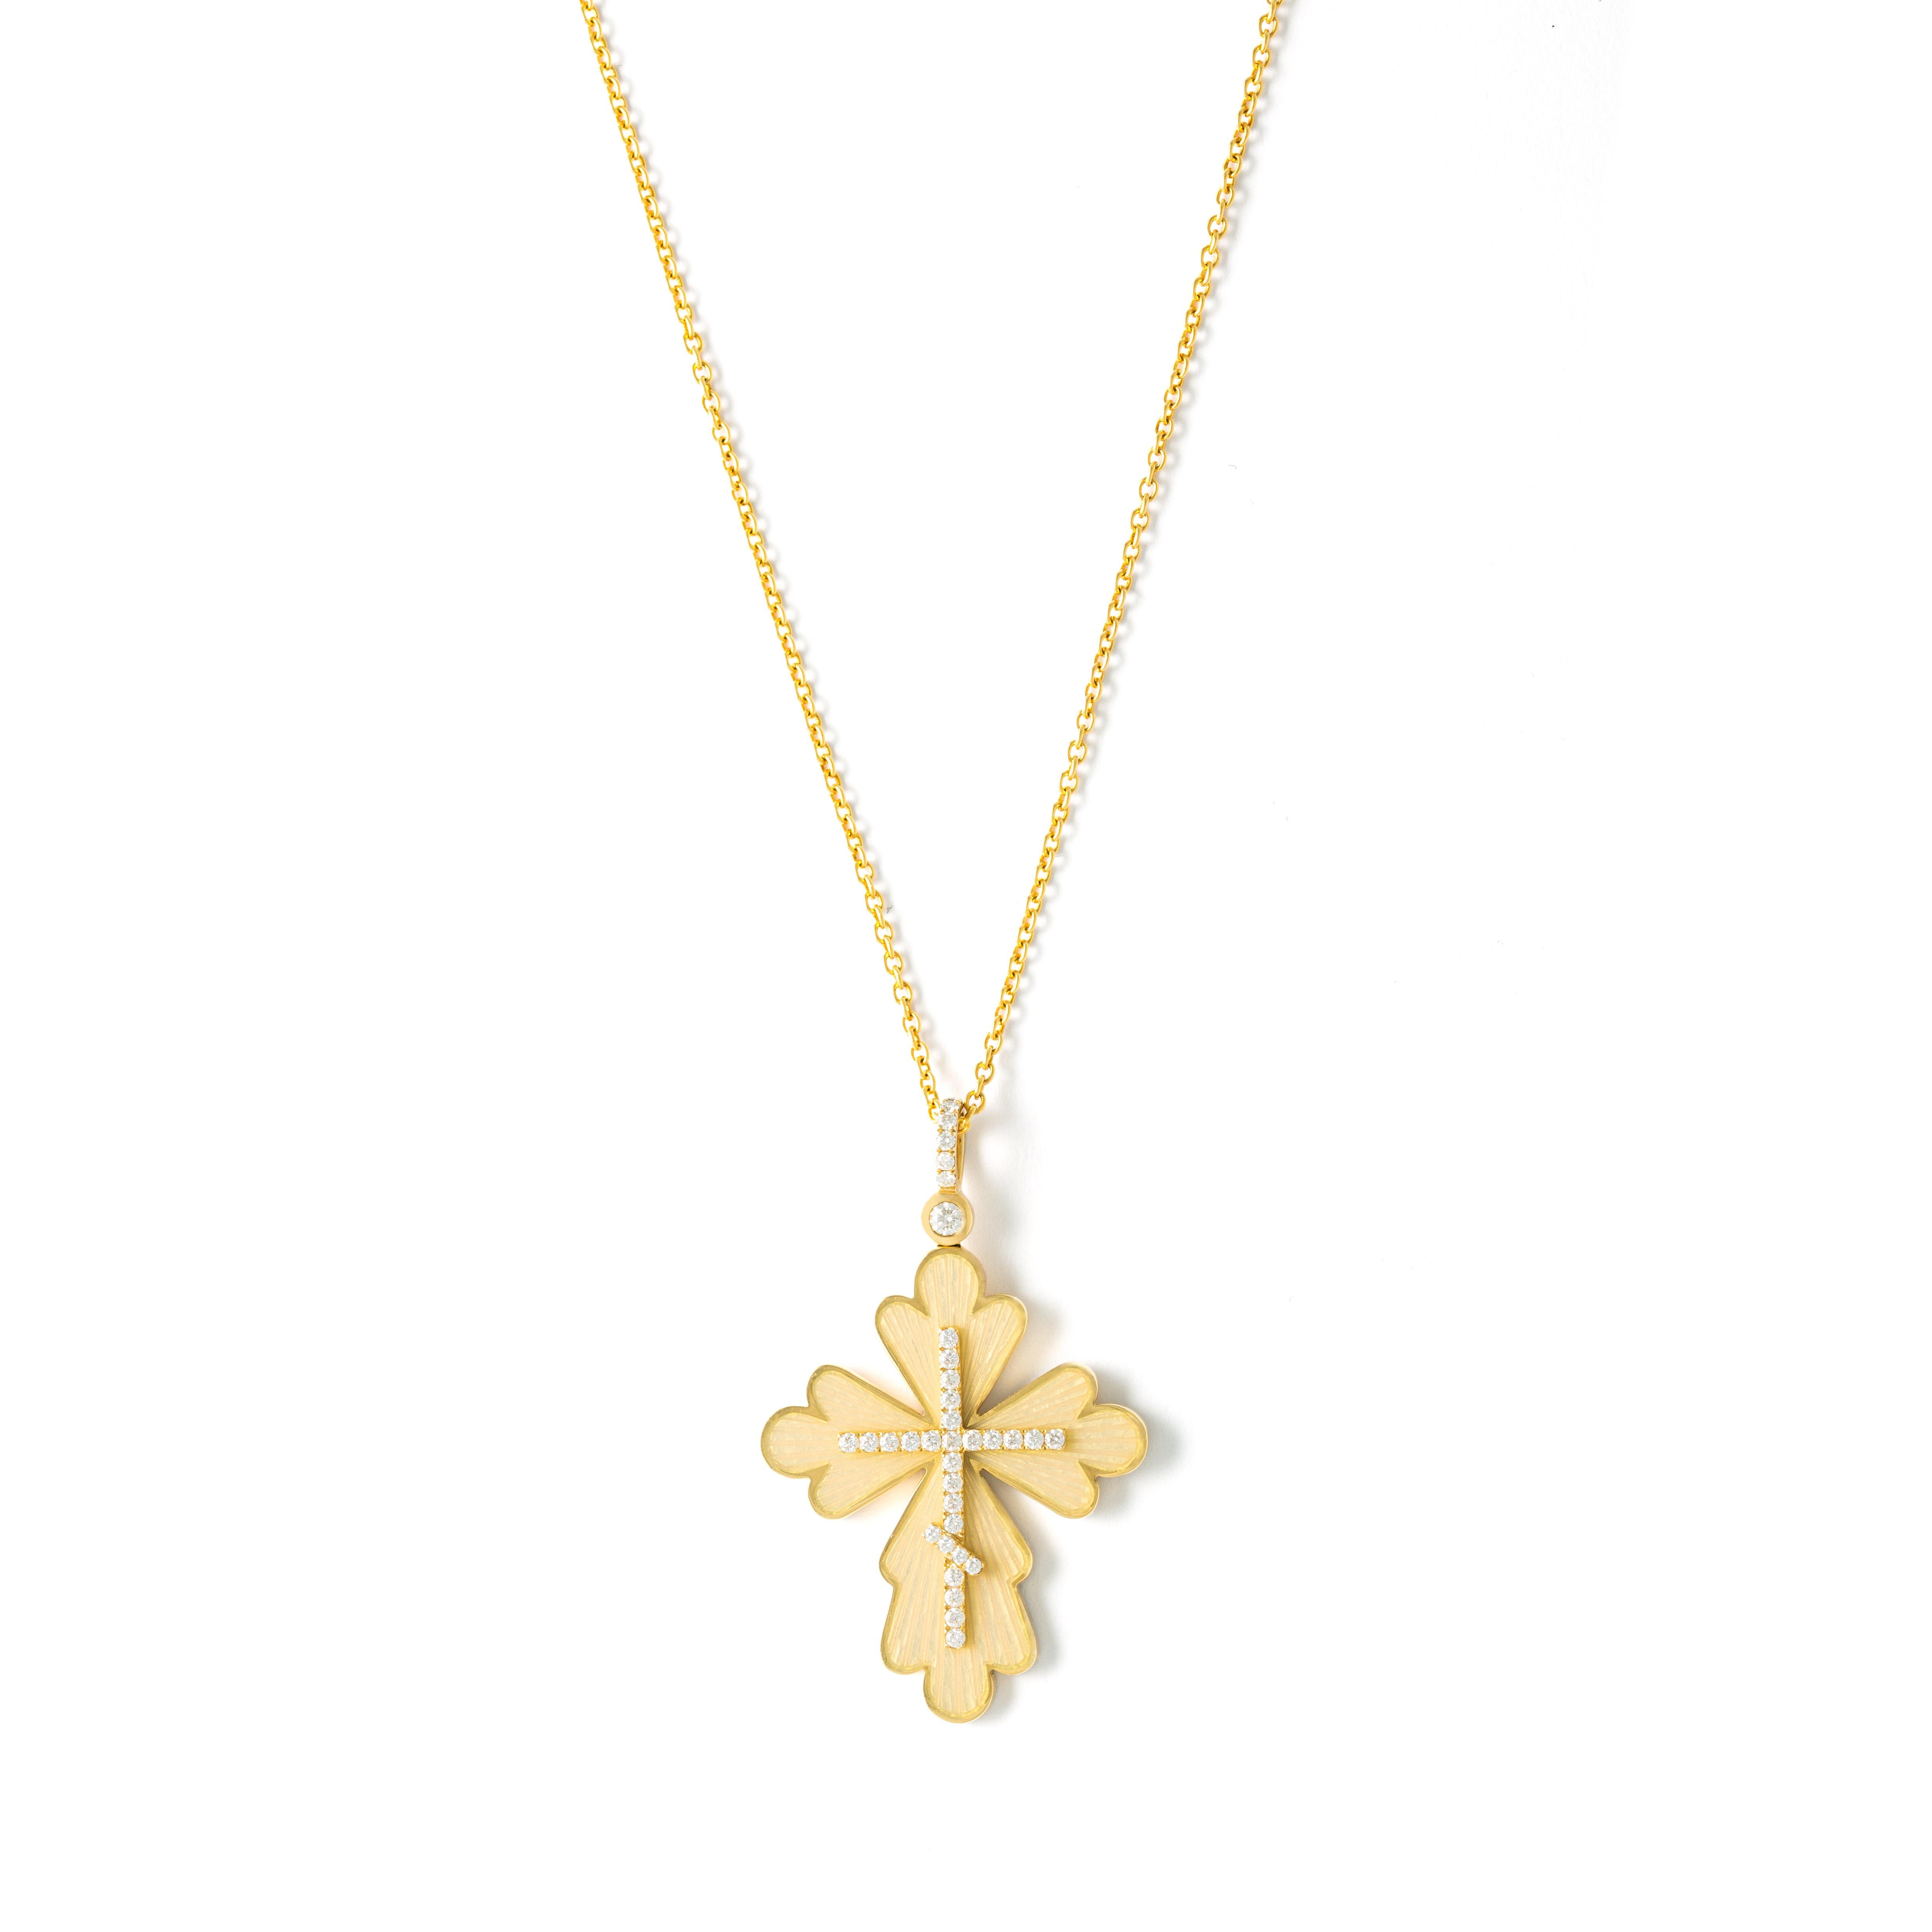 Fabergé Diamond Yellow Gold 18K Cross Pendant Necklace

Dia 1-Round-0,07ct VS1, 
Dia 34-Round-0,29ct VS1, 
Enamel 4-0,25 ct  

Lenght Pendant, 3.90 cm, Width Pendant: 2.40 cm
Length Chain: 44.50 cm up to 49.50 cm
